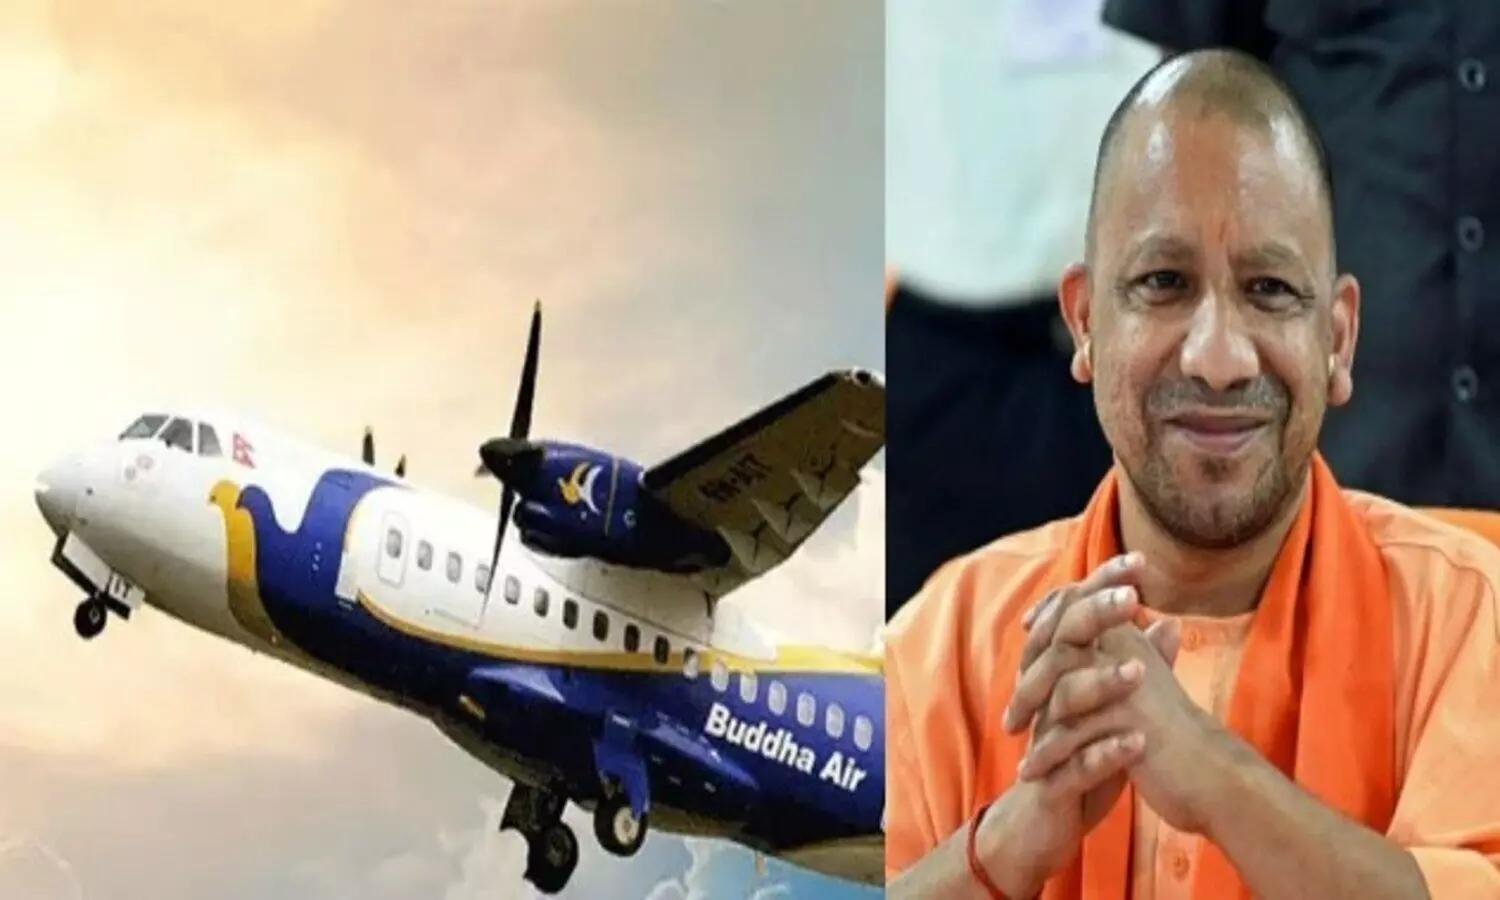 नेपाल की विमानन कंपनी बुद्धा एयर के अधिकारियों ने की नवनीत सहगल से मुलाकात,मुख्यमंत्री के सामने जनकपुर और अयोध्या के बीच उड़ान सेवा का प्रस्ताव रखने के लिए मांगा समय